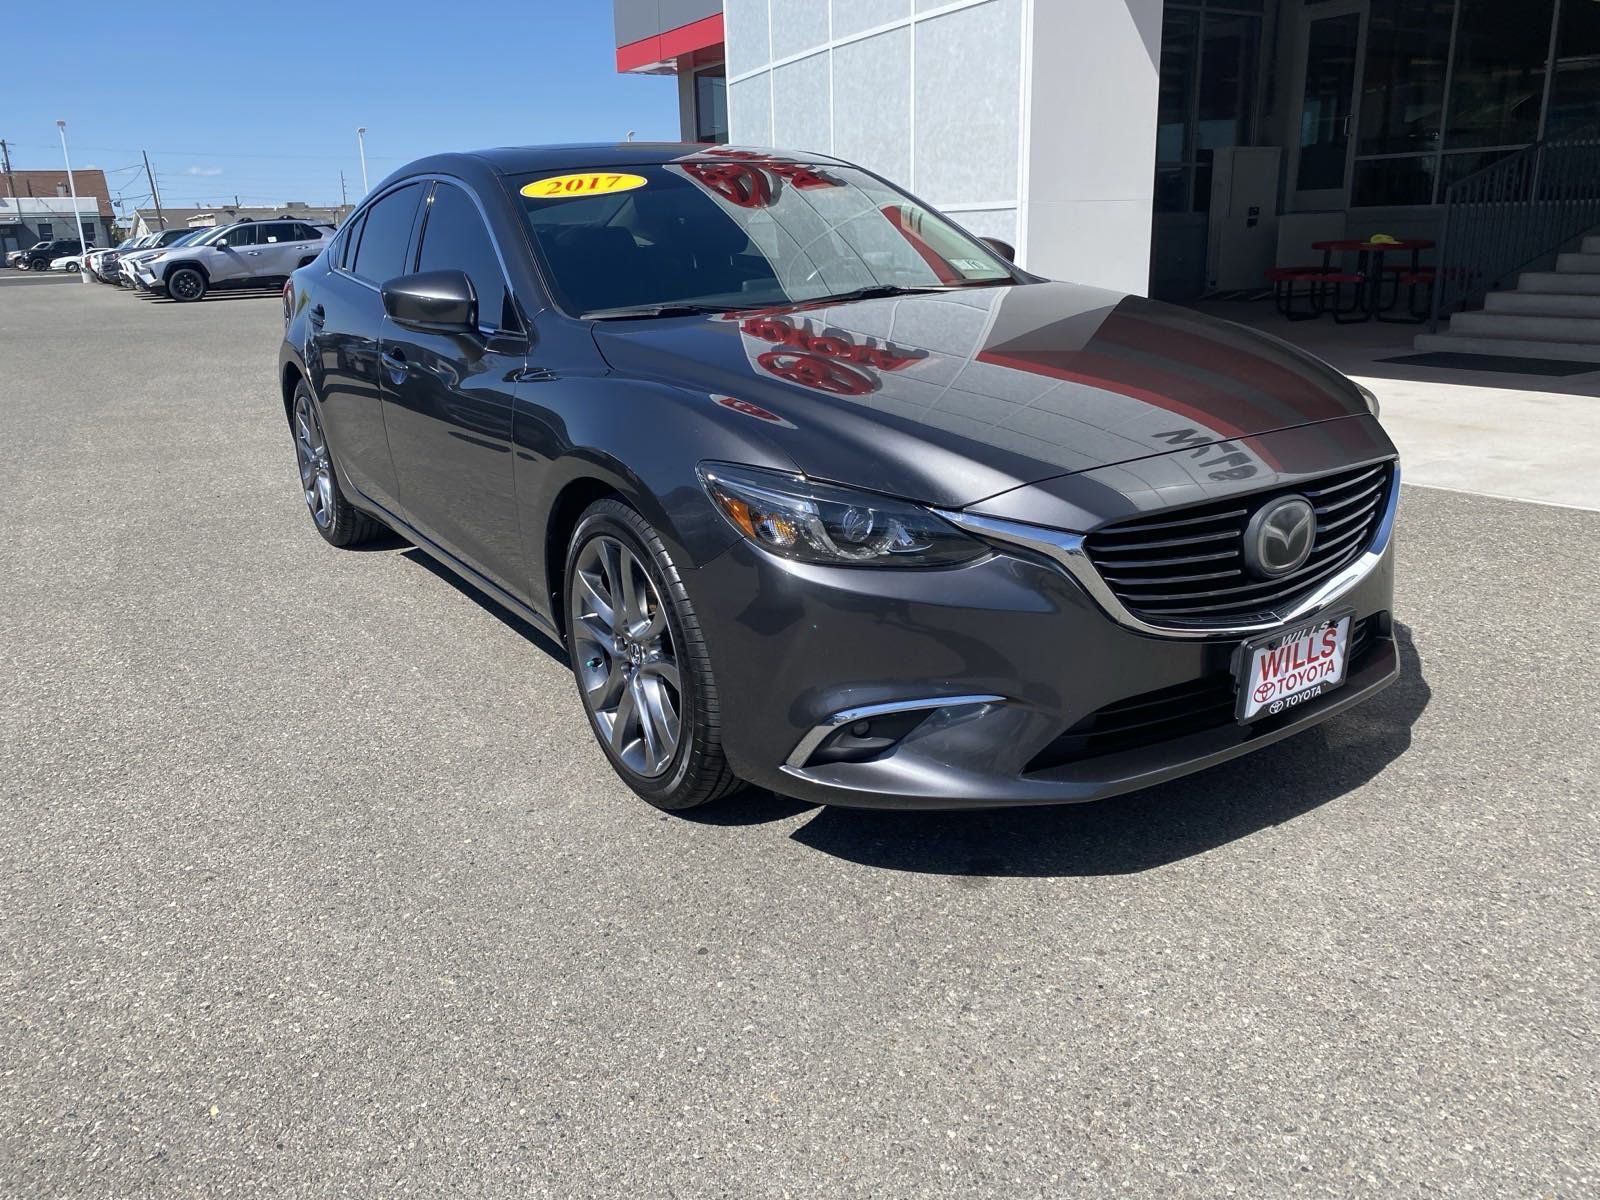 2017 - Mazda - Mazda6 - $18,995